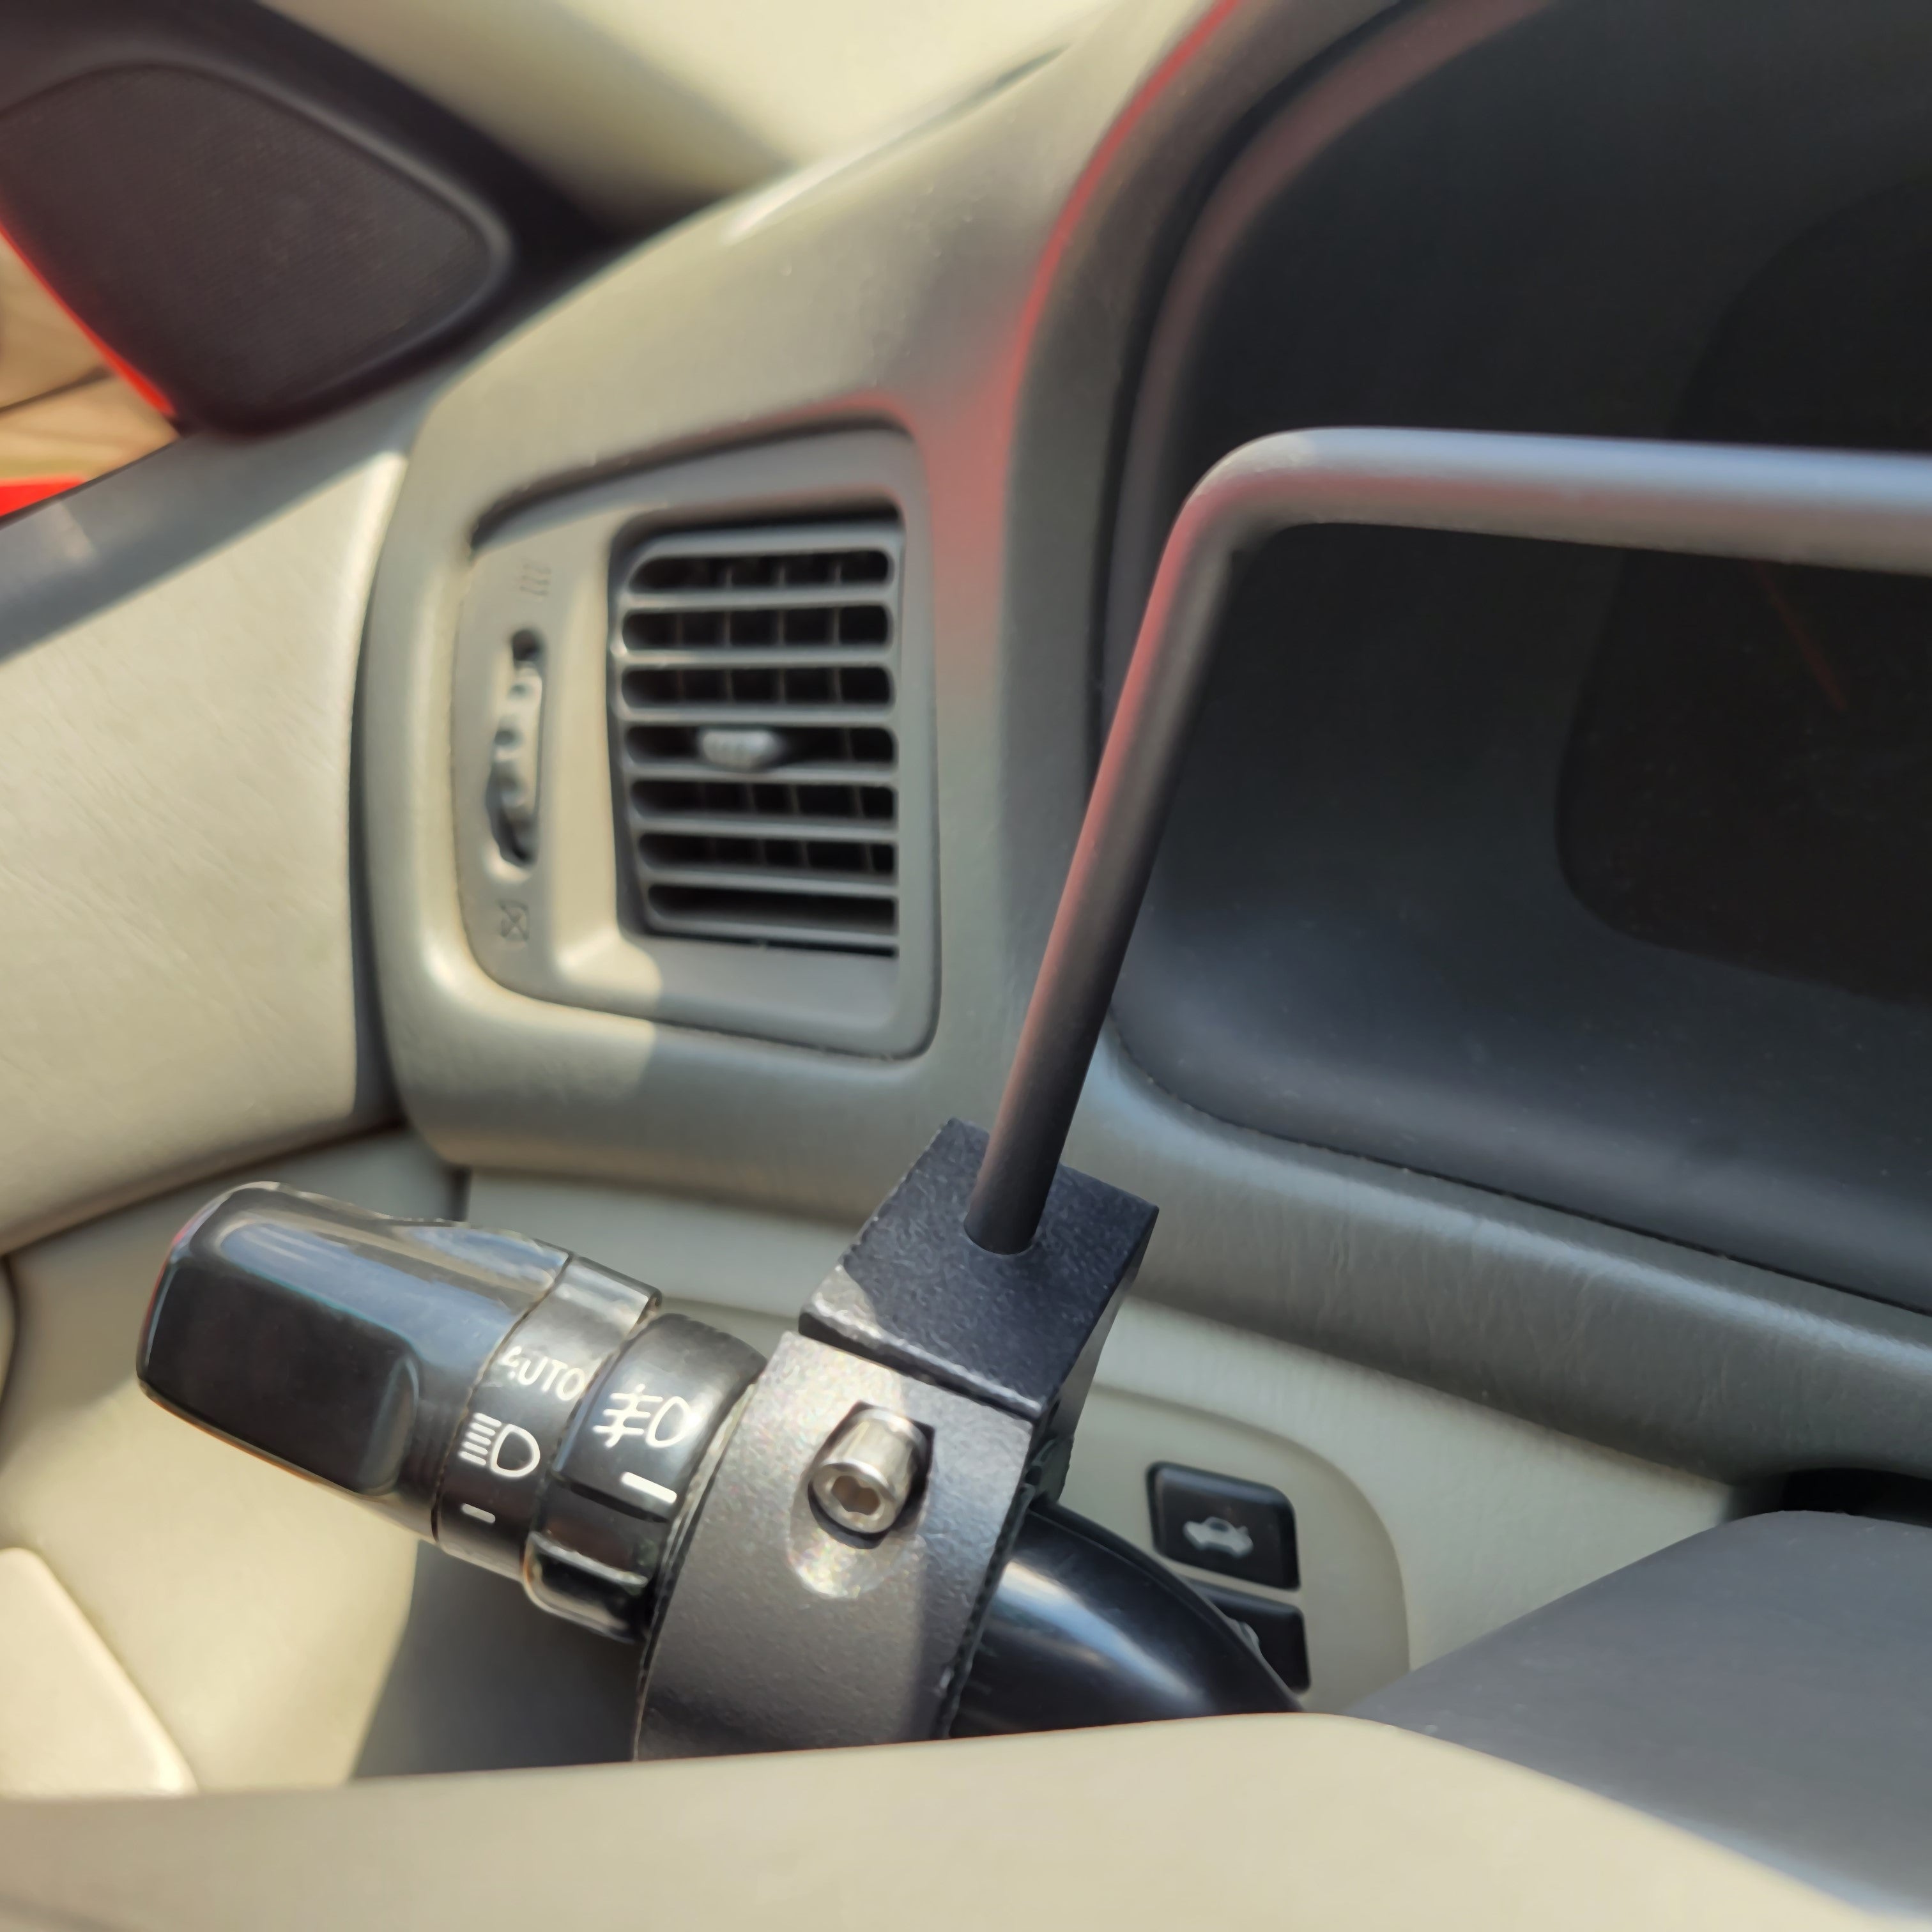 SAFEDRIVE Turn Signal Stick Installed in a car